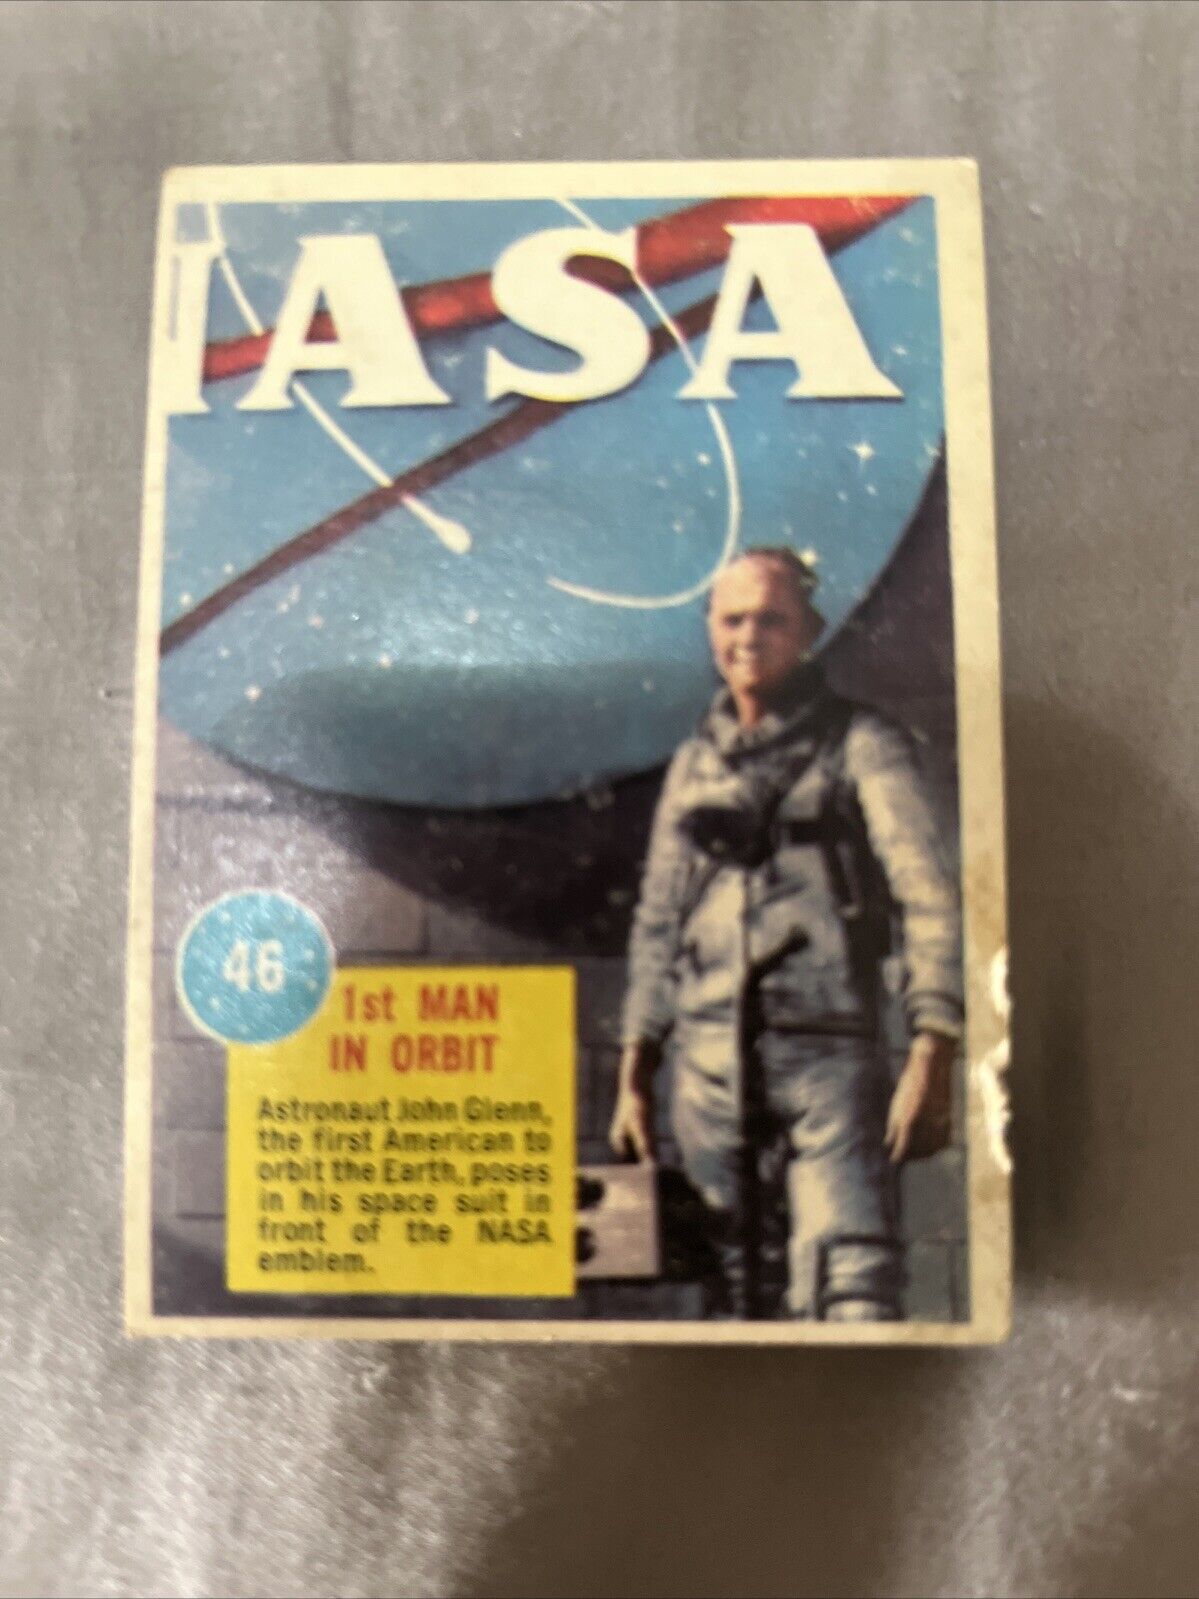 1963 Topps NASA Astronauts #46- 1st Man In Orbit (John Glenn) 3D back VG+